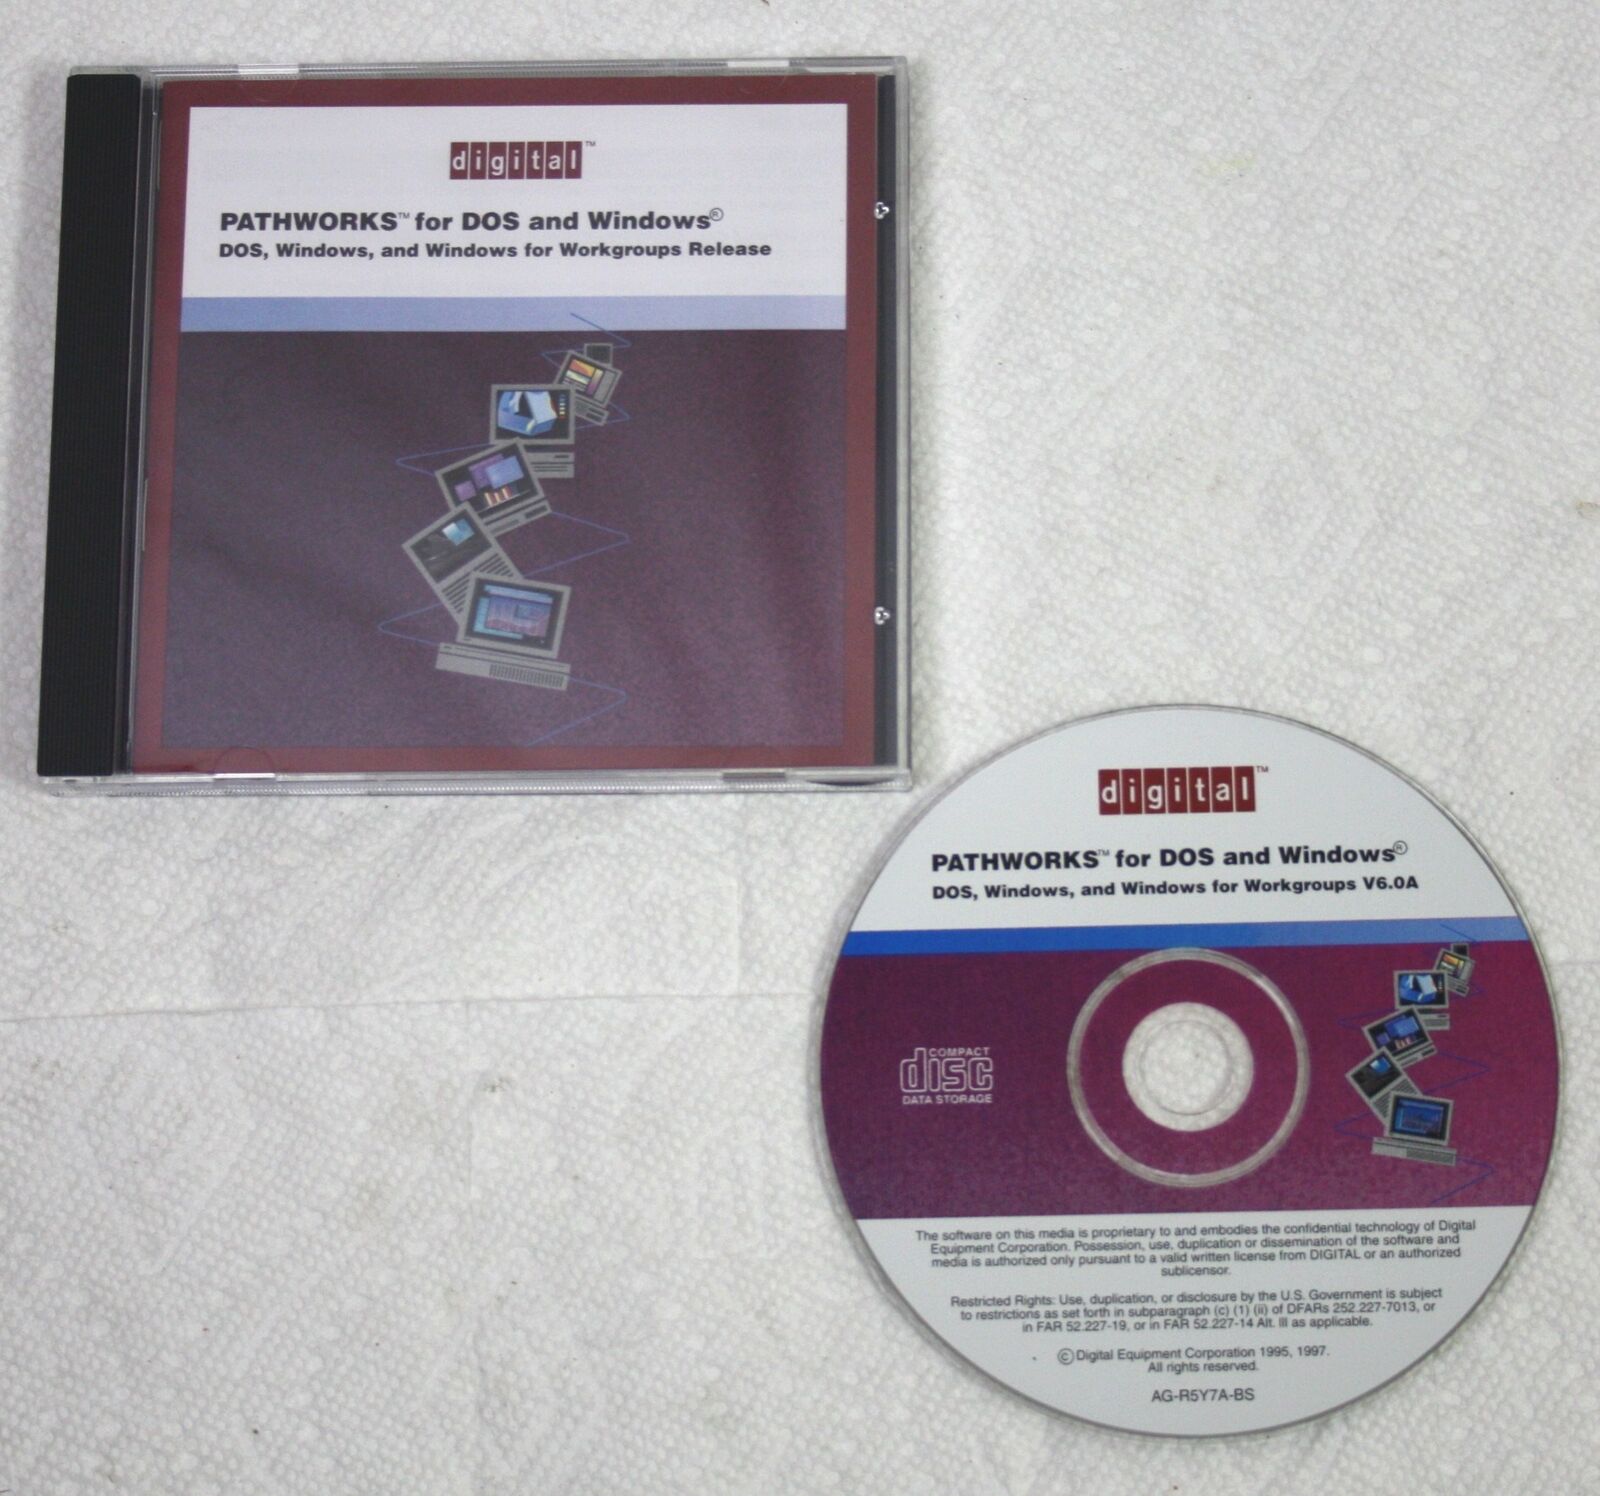 Vintage 1997 Digital DEC Pathworks for DOS Windows Workgroups V6.0A CD VMS VAX